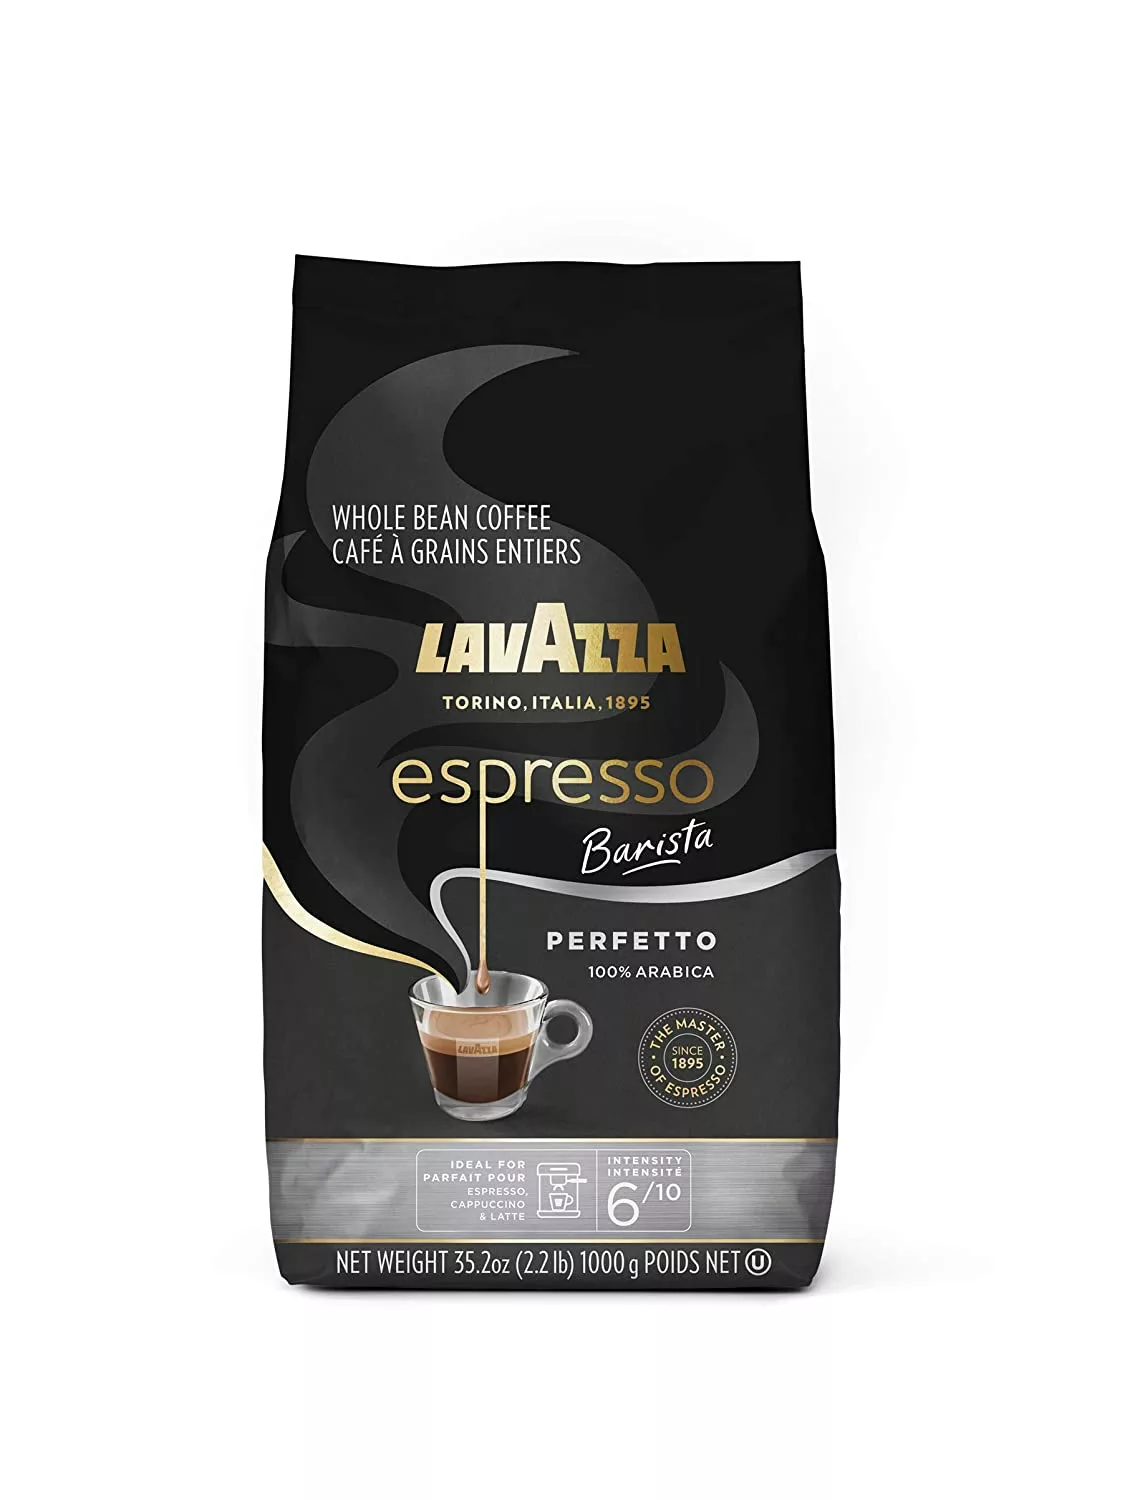 
Lavazza Espresso Barista Perfetto Whole Bean Coffee 100% Arabica, Medium Espresso Roast, 2.2-Pound Bag 